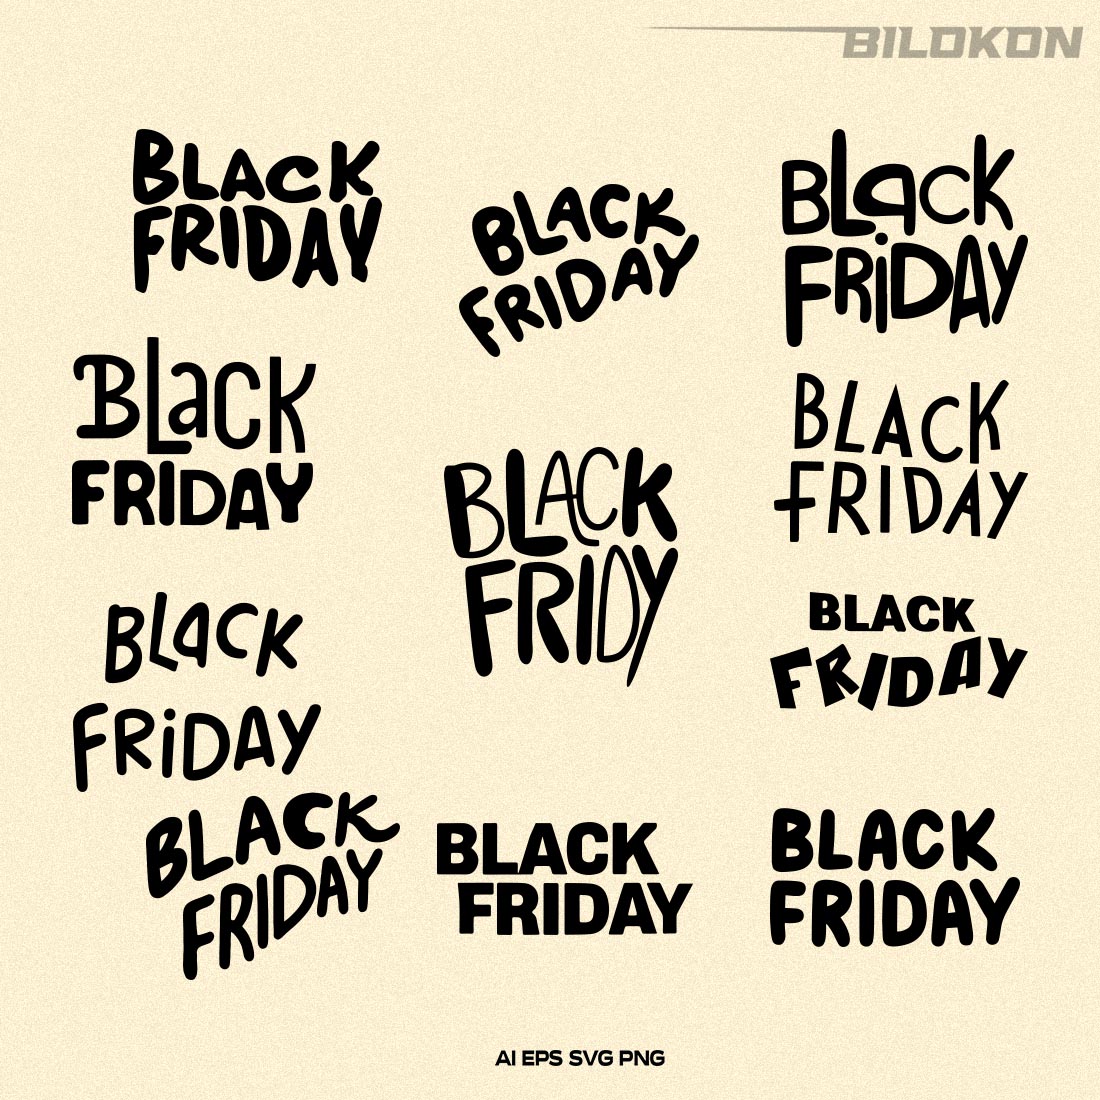 Black Friday SVG Bundle 11 File, Black Friday Sale Vector preview image.